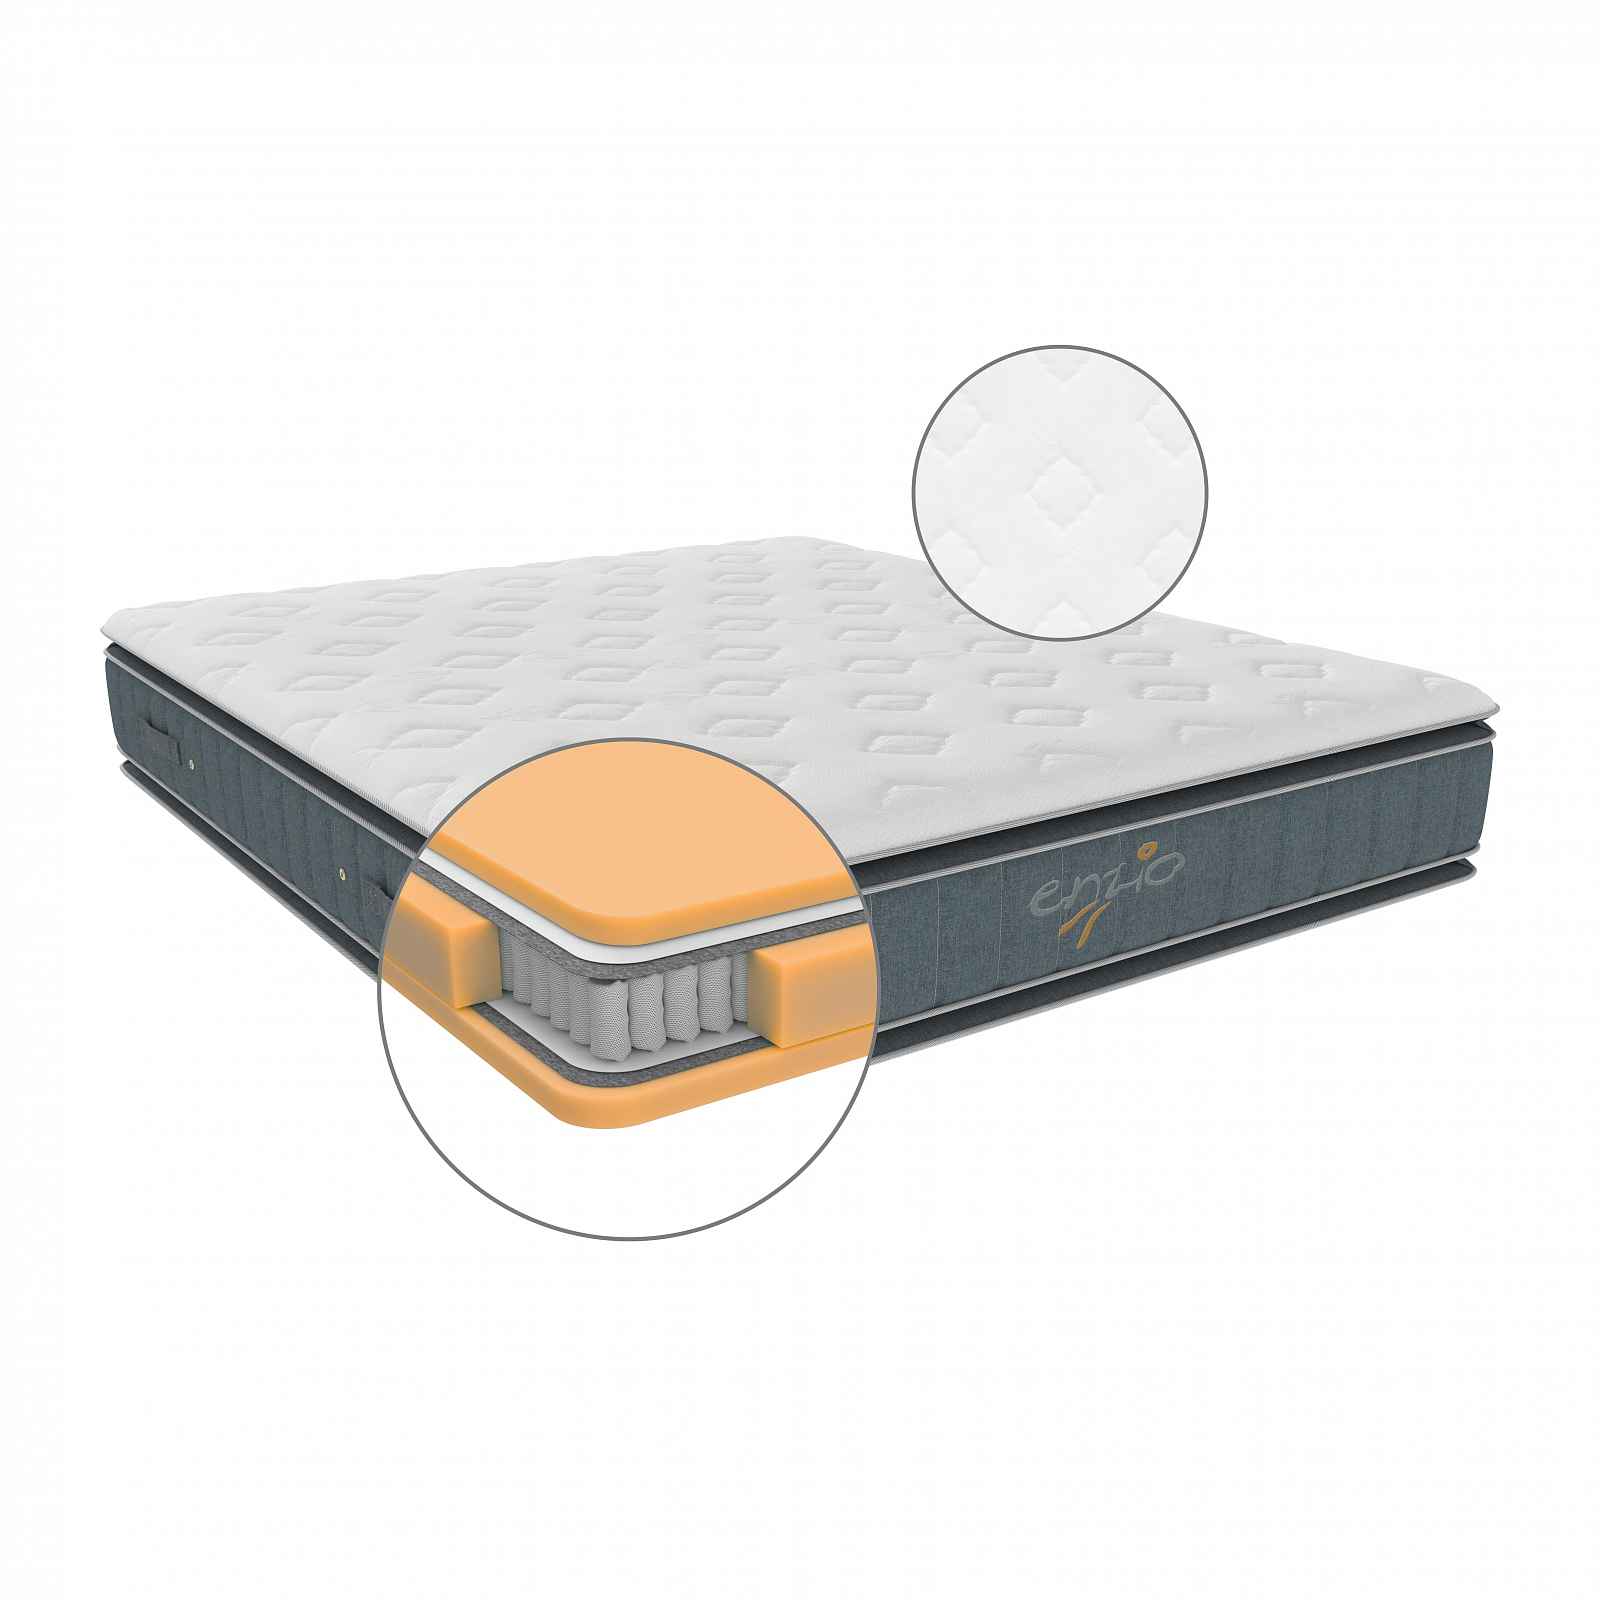 Matrace ATLANTA 2.0 vhodná pro boxspringové postele s dvěma pocity tuhosti 200x200 cm